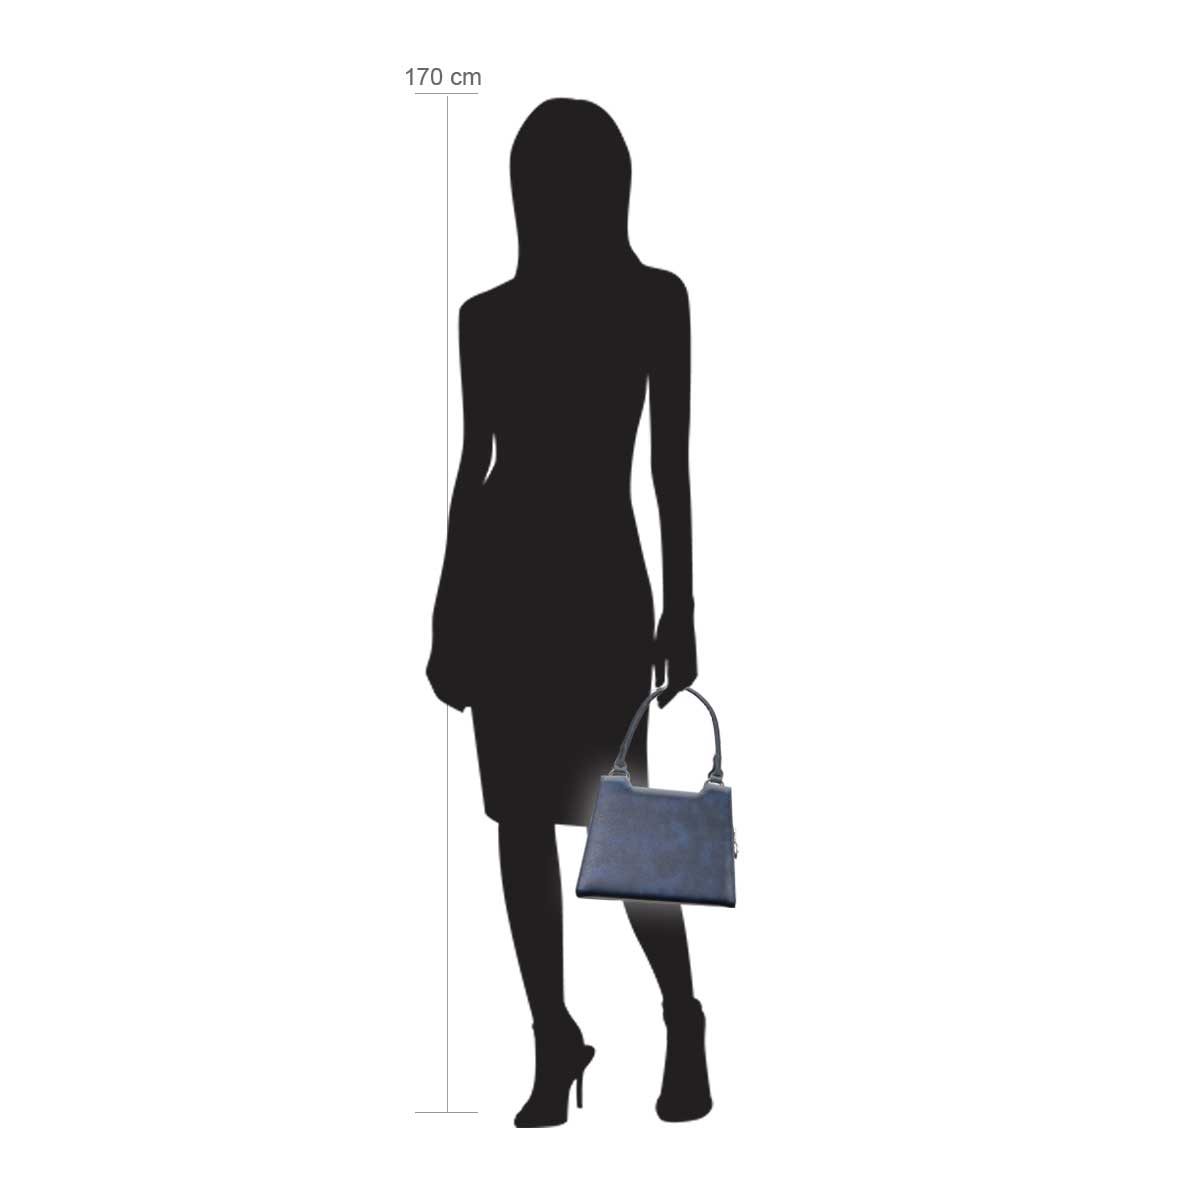 Modellpuppe 170 cm groß zeigt die Handtaschengröße an der Person Modell:Sitka